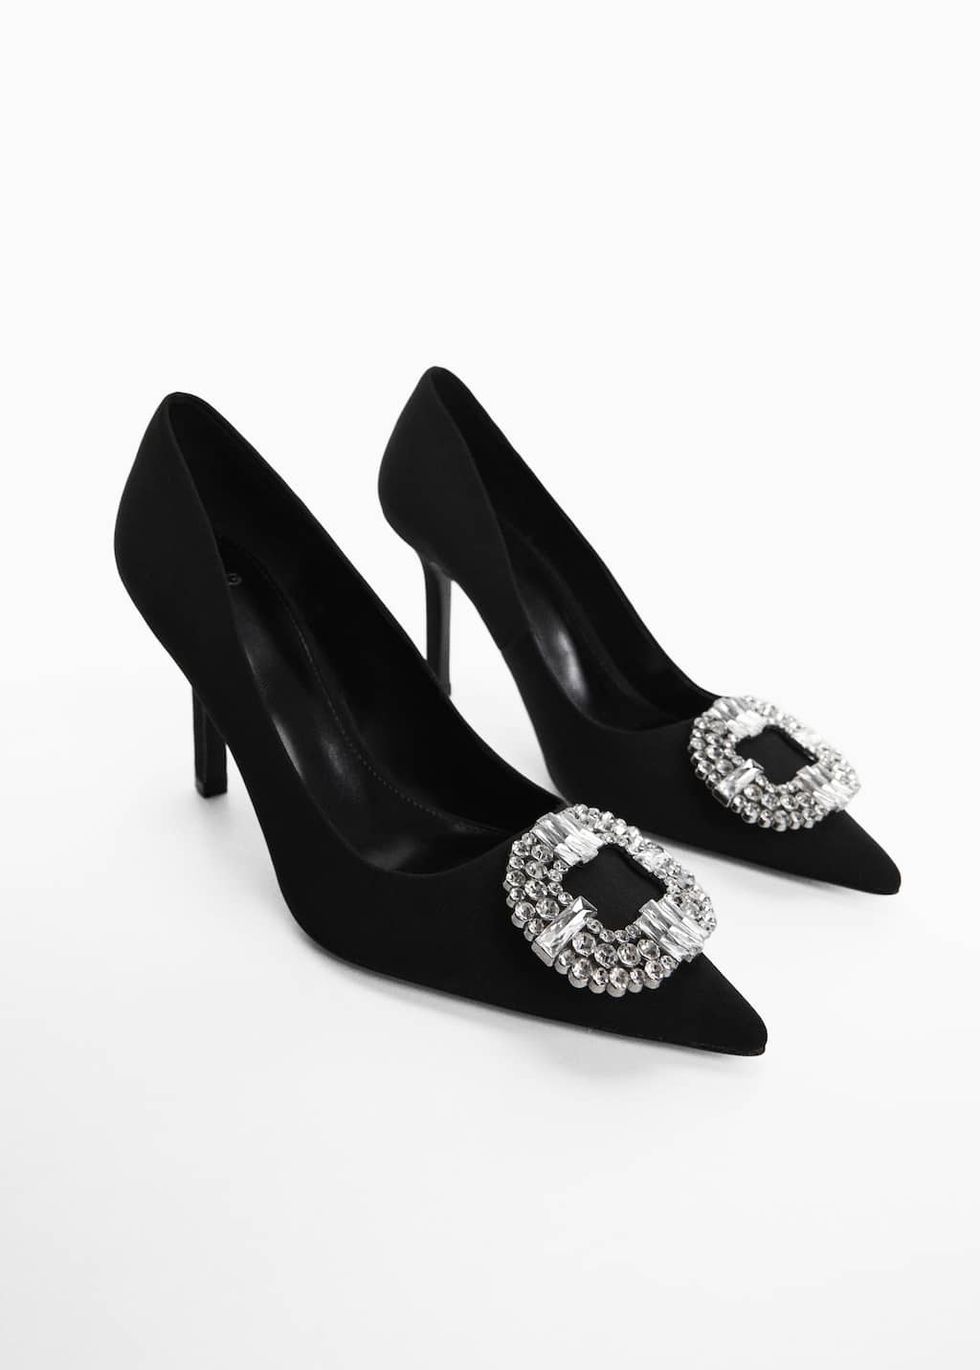 Jewel heel shoes